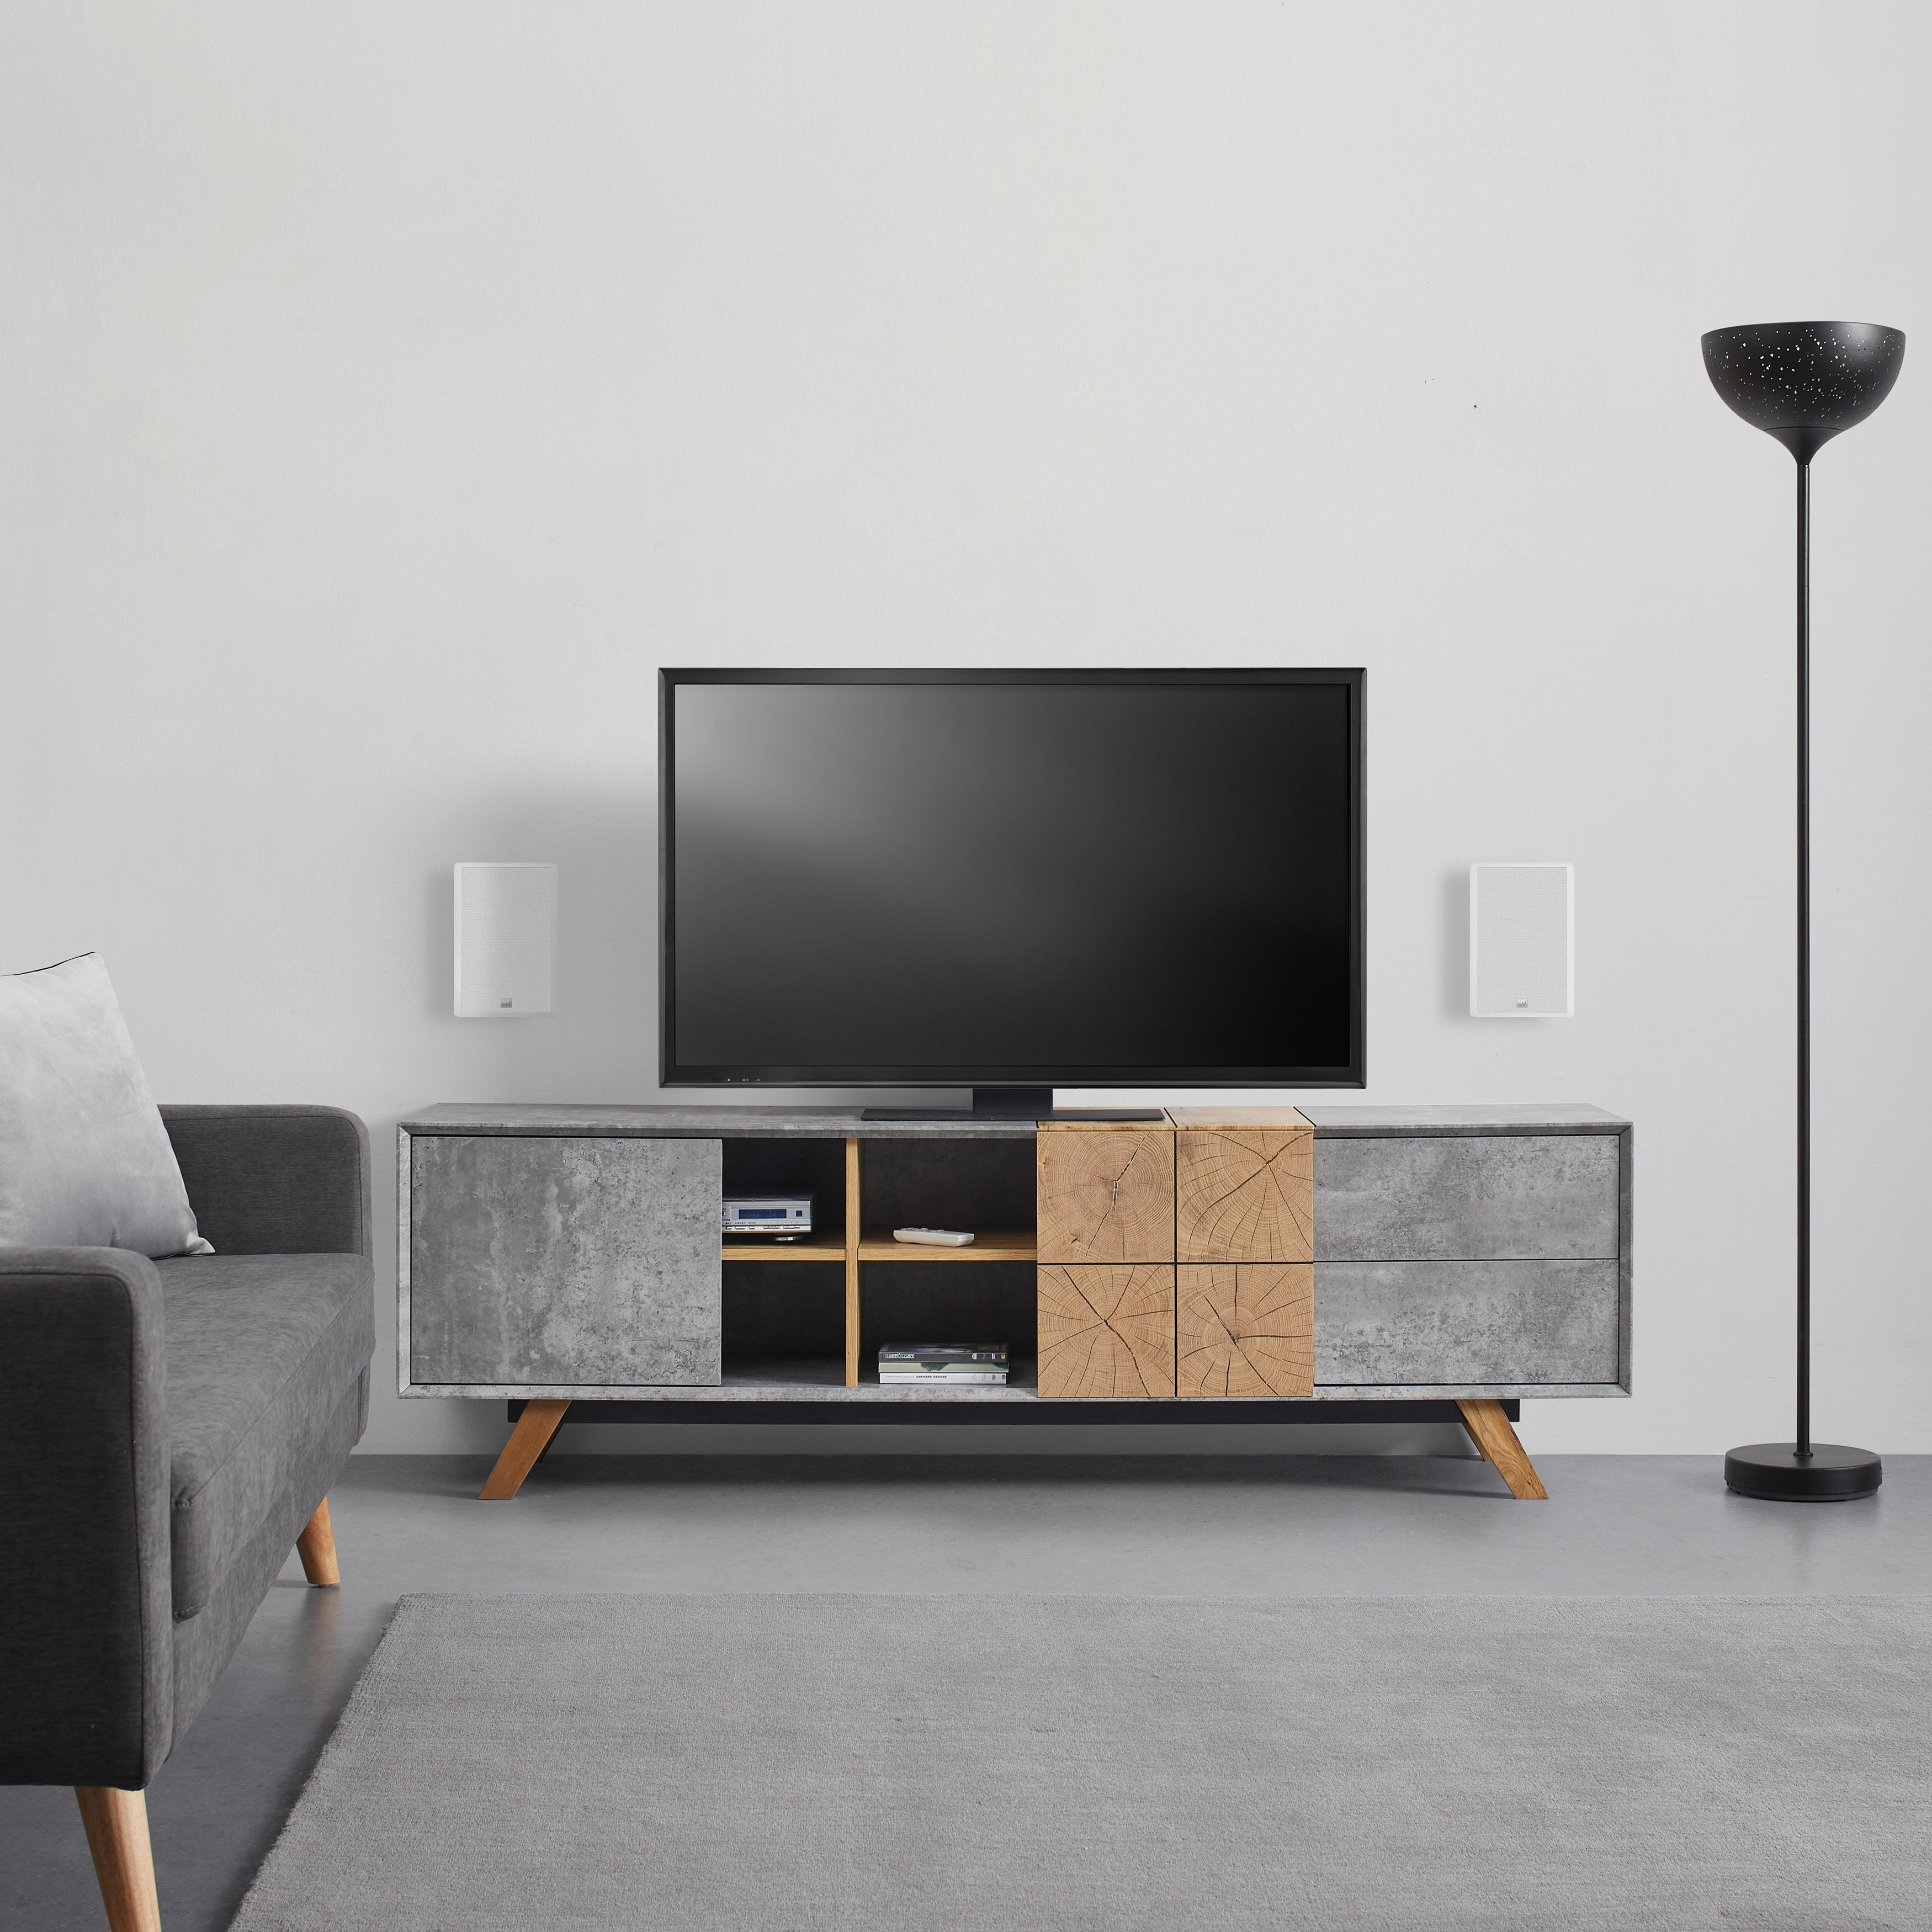 Tv Díl Casper - šedá/barvy dubu, Moderní, dřevo (180/55/40cm) - Modern Living